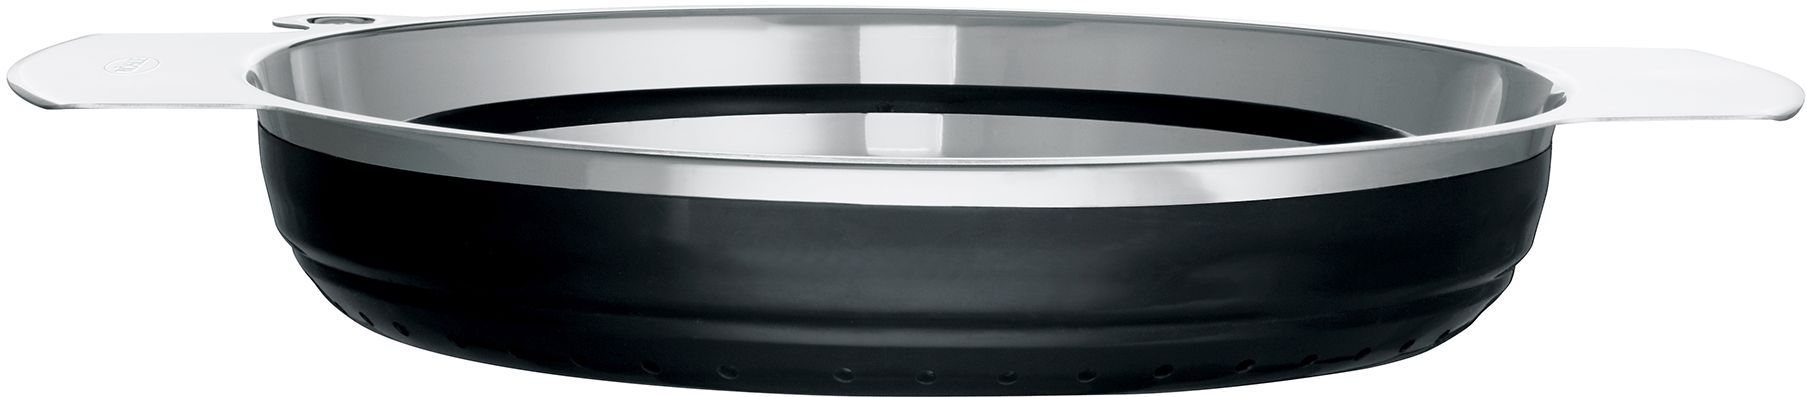 Rösle Passoire pliable Ø 24 cm acier/silicone - noir